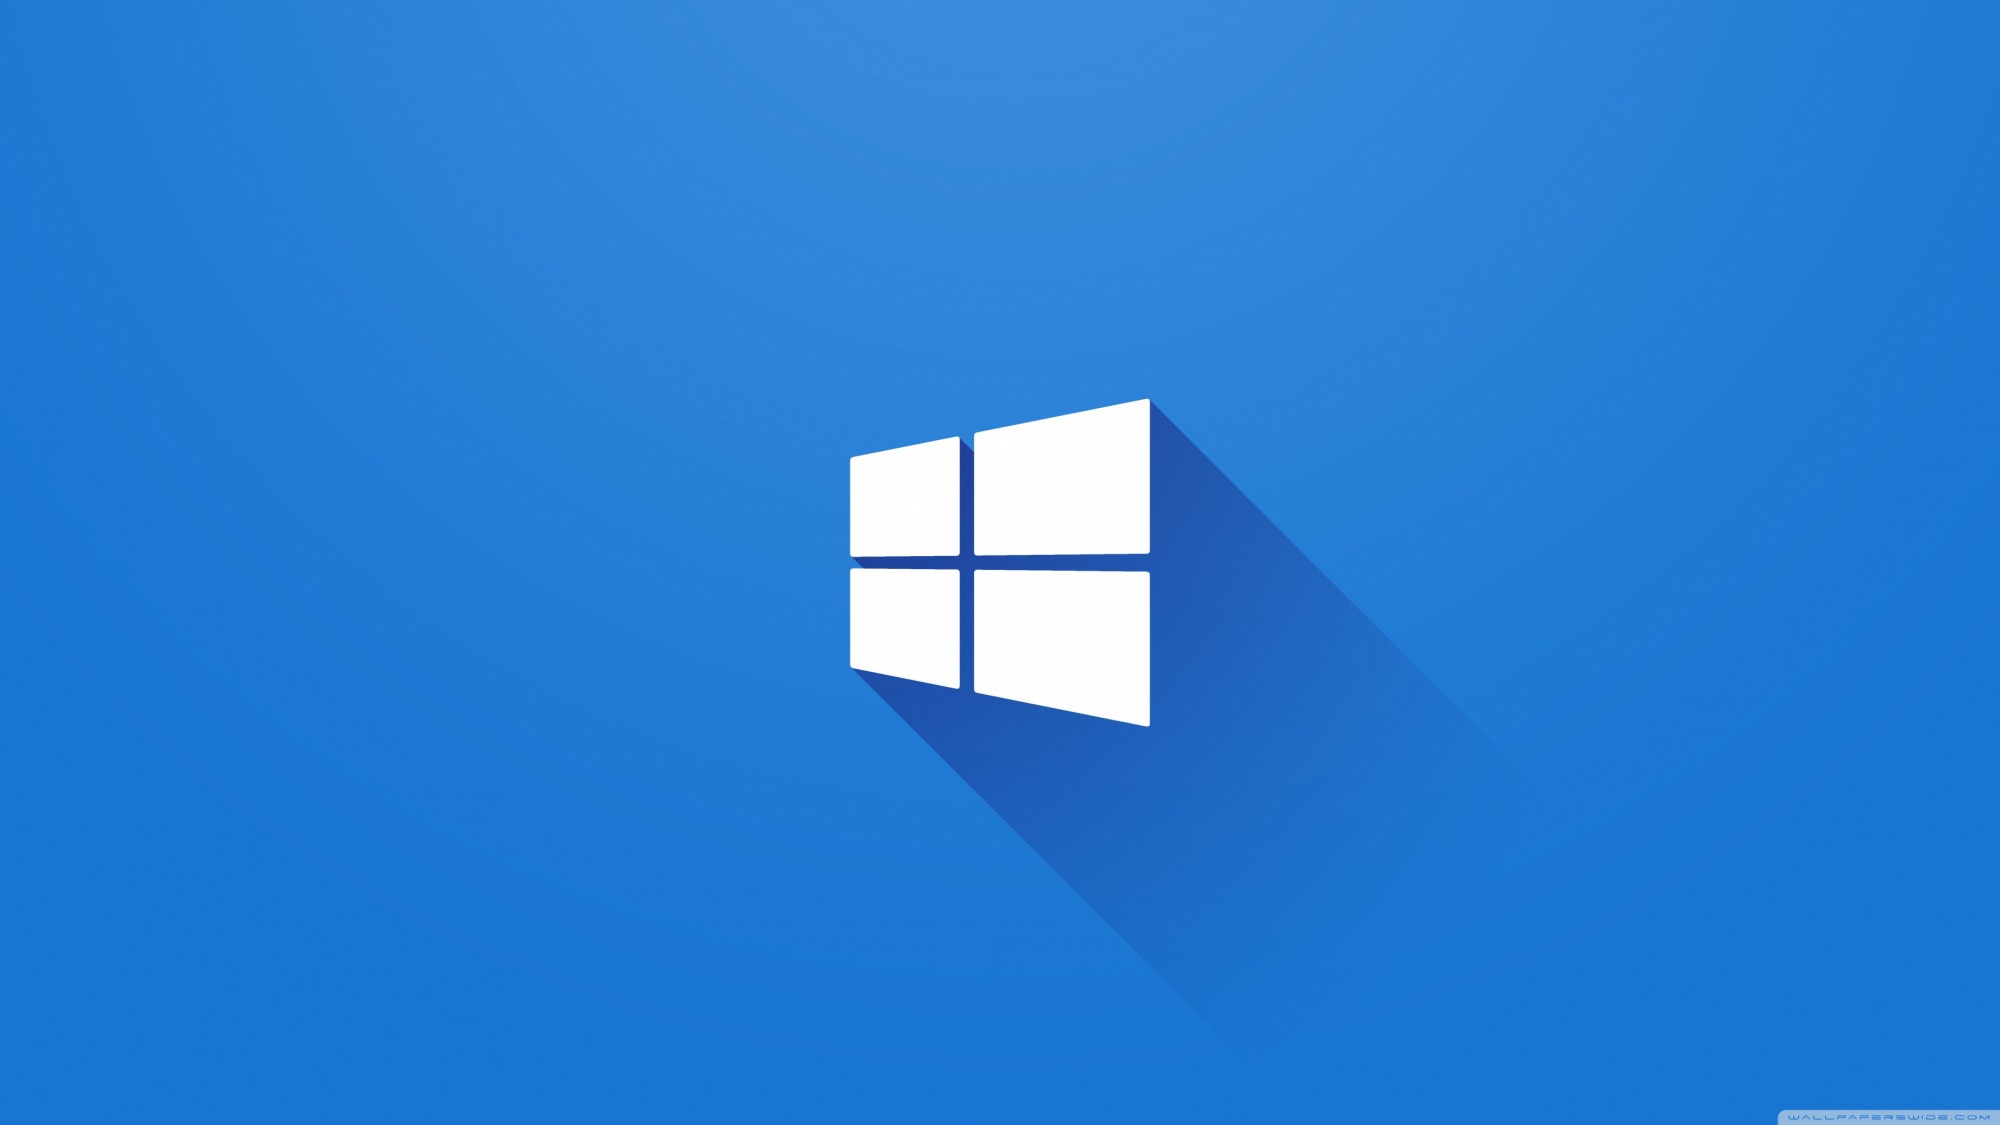 Nâng cấp Windows 10 ngay hôm nay để trải nghiệm những tính năng mới nhất và được hỗ trợ tốt nhất. Sự cải tiến về hiệu suất, bảo mật và tính năng mới sẽ giúp bạn làm việc một cách mượt mà và tiện lợi hơn.